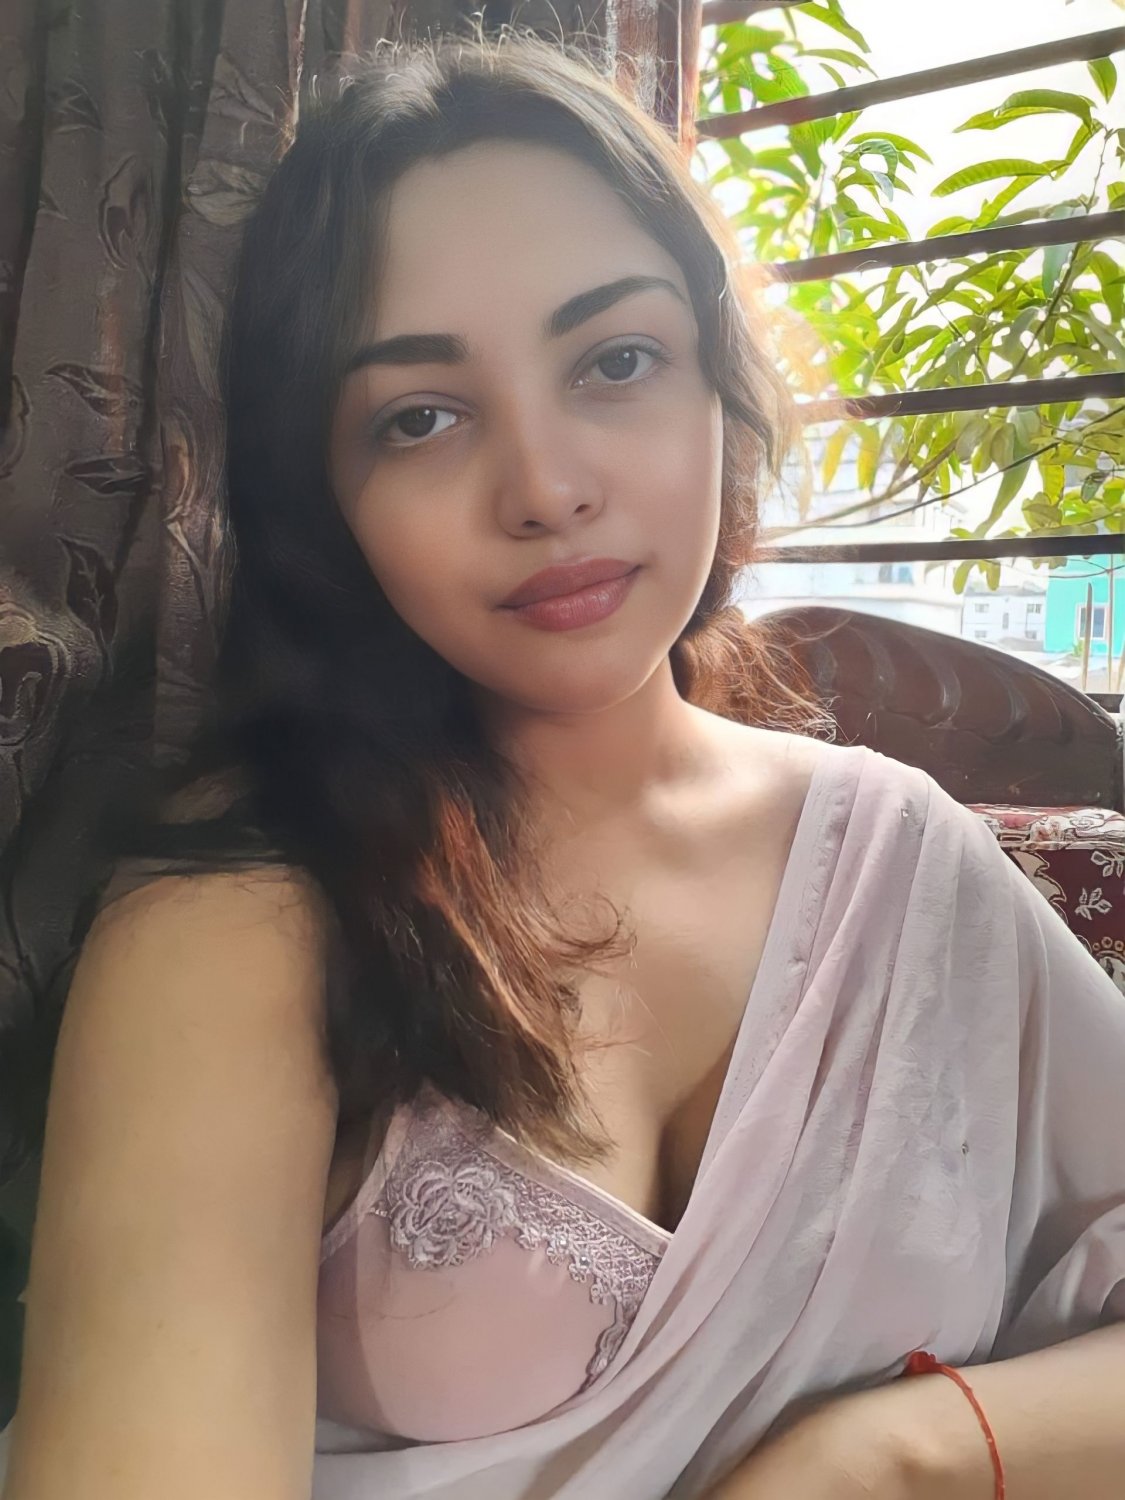 Naked Indian Girlfriend - Indian Girlfriend Priya Nude Videos - Porn - EroMe